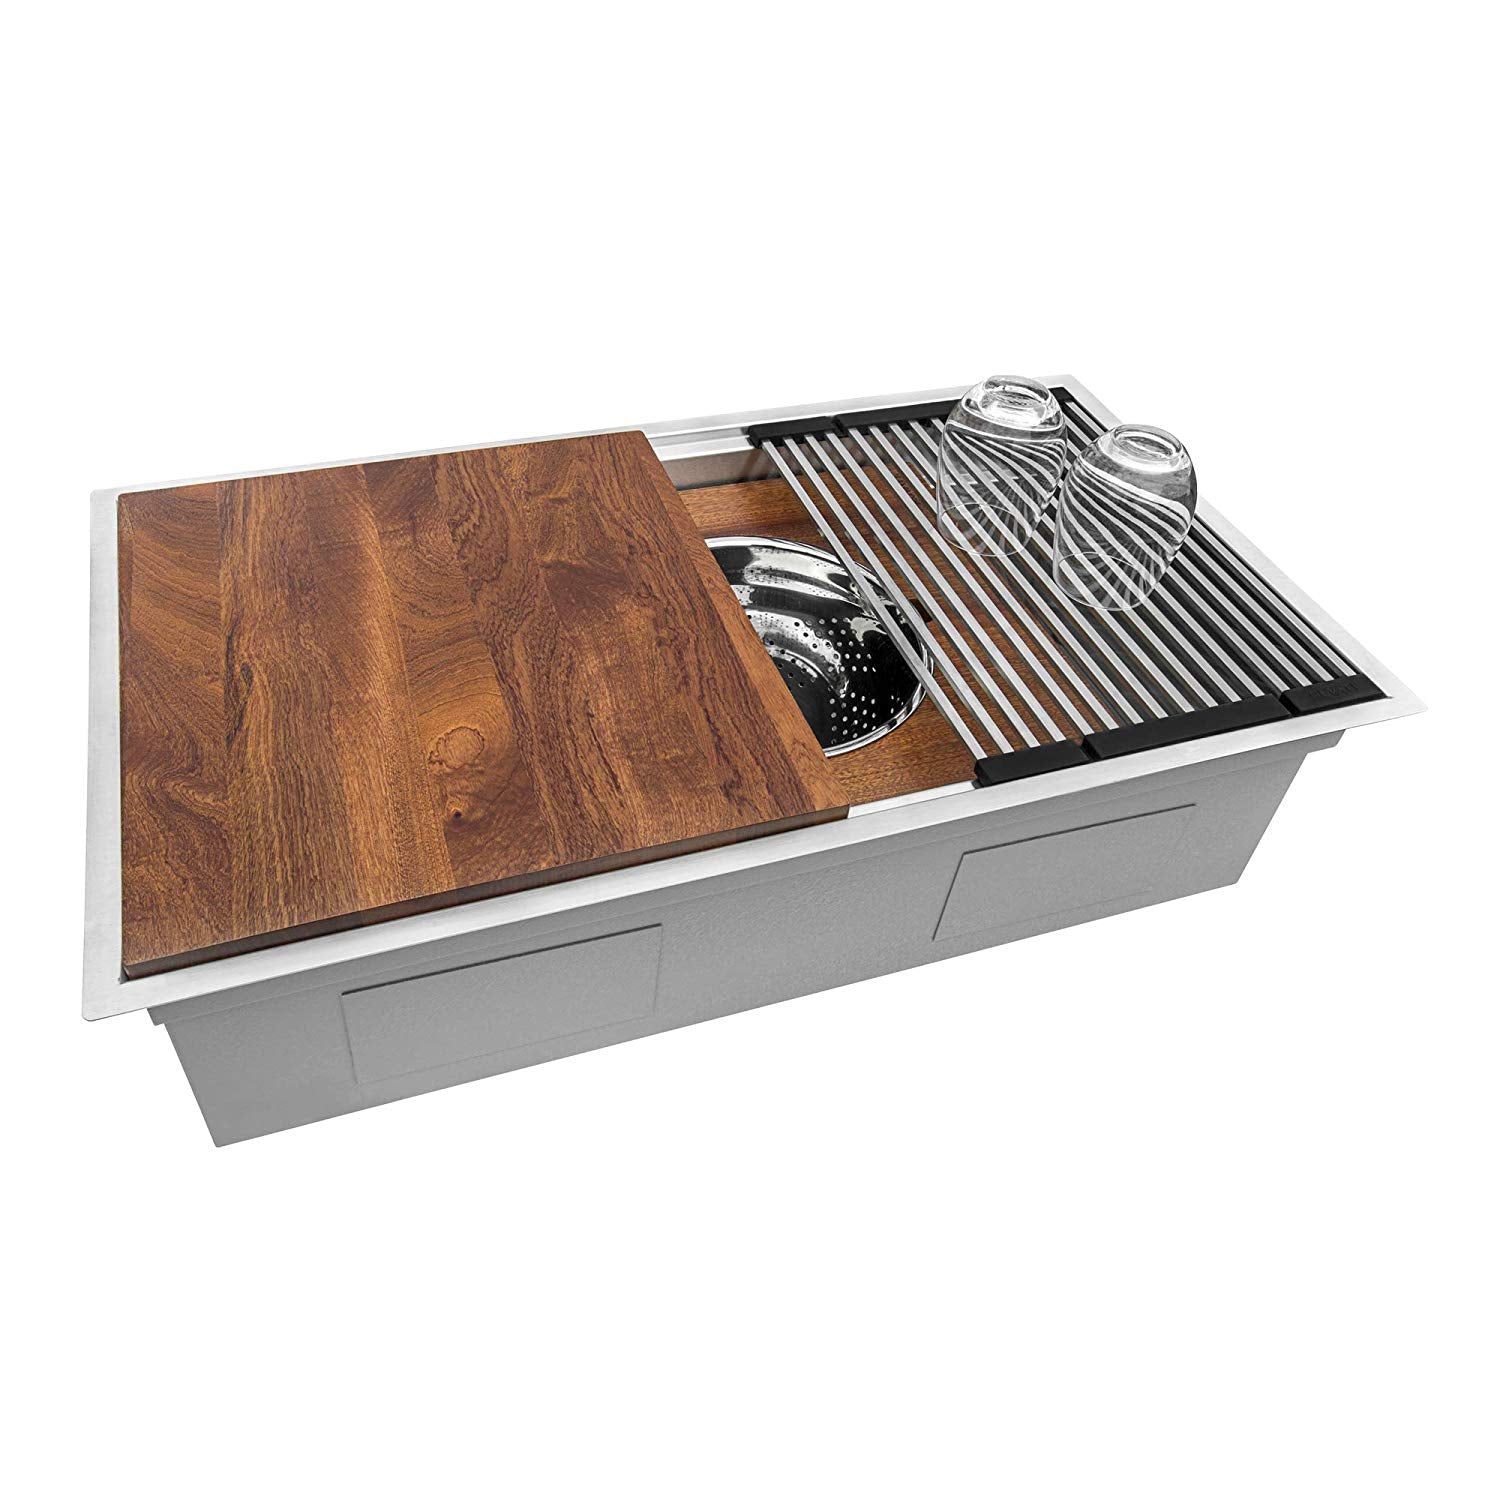 Ruvati 36-inch Workstation Dual Tier Ledge Kitchen Sink Undermount 16 Gauge Stainless Steel – RVH8277